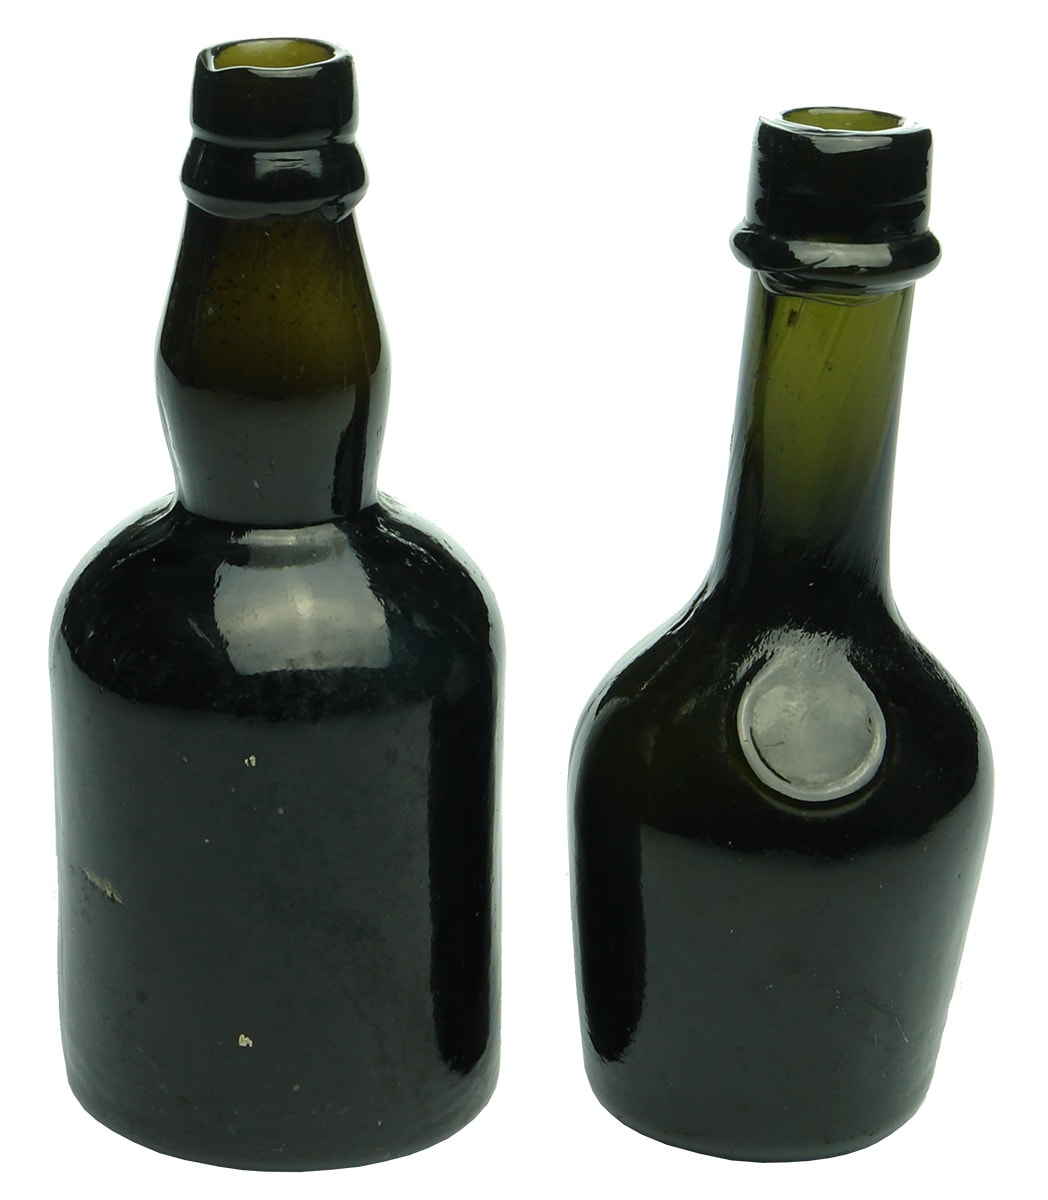 Sample Miniature Black Glass Bottles